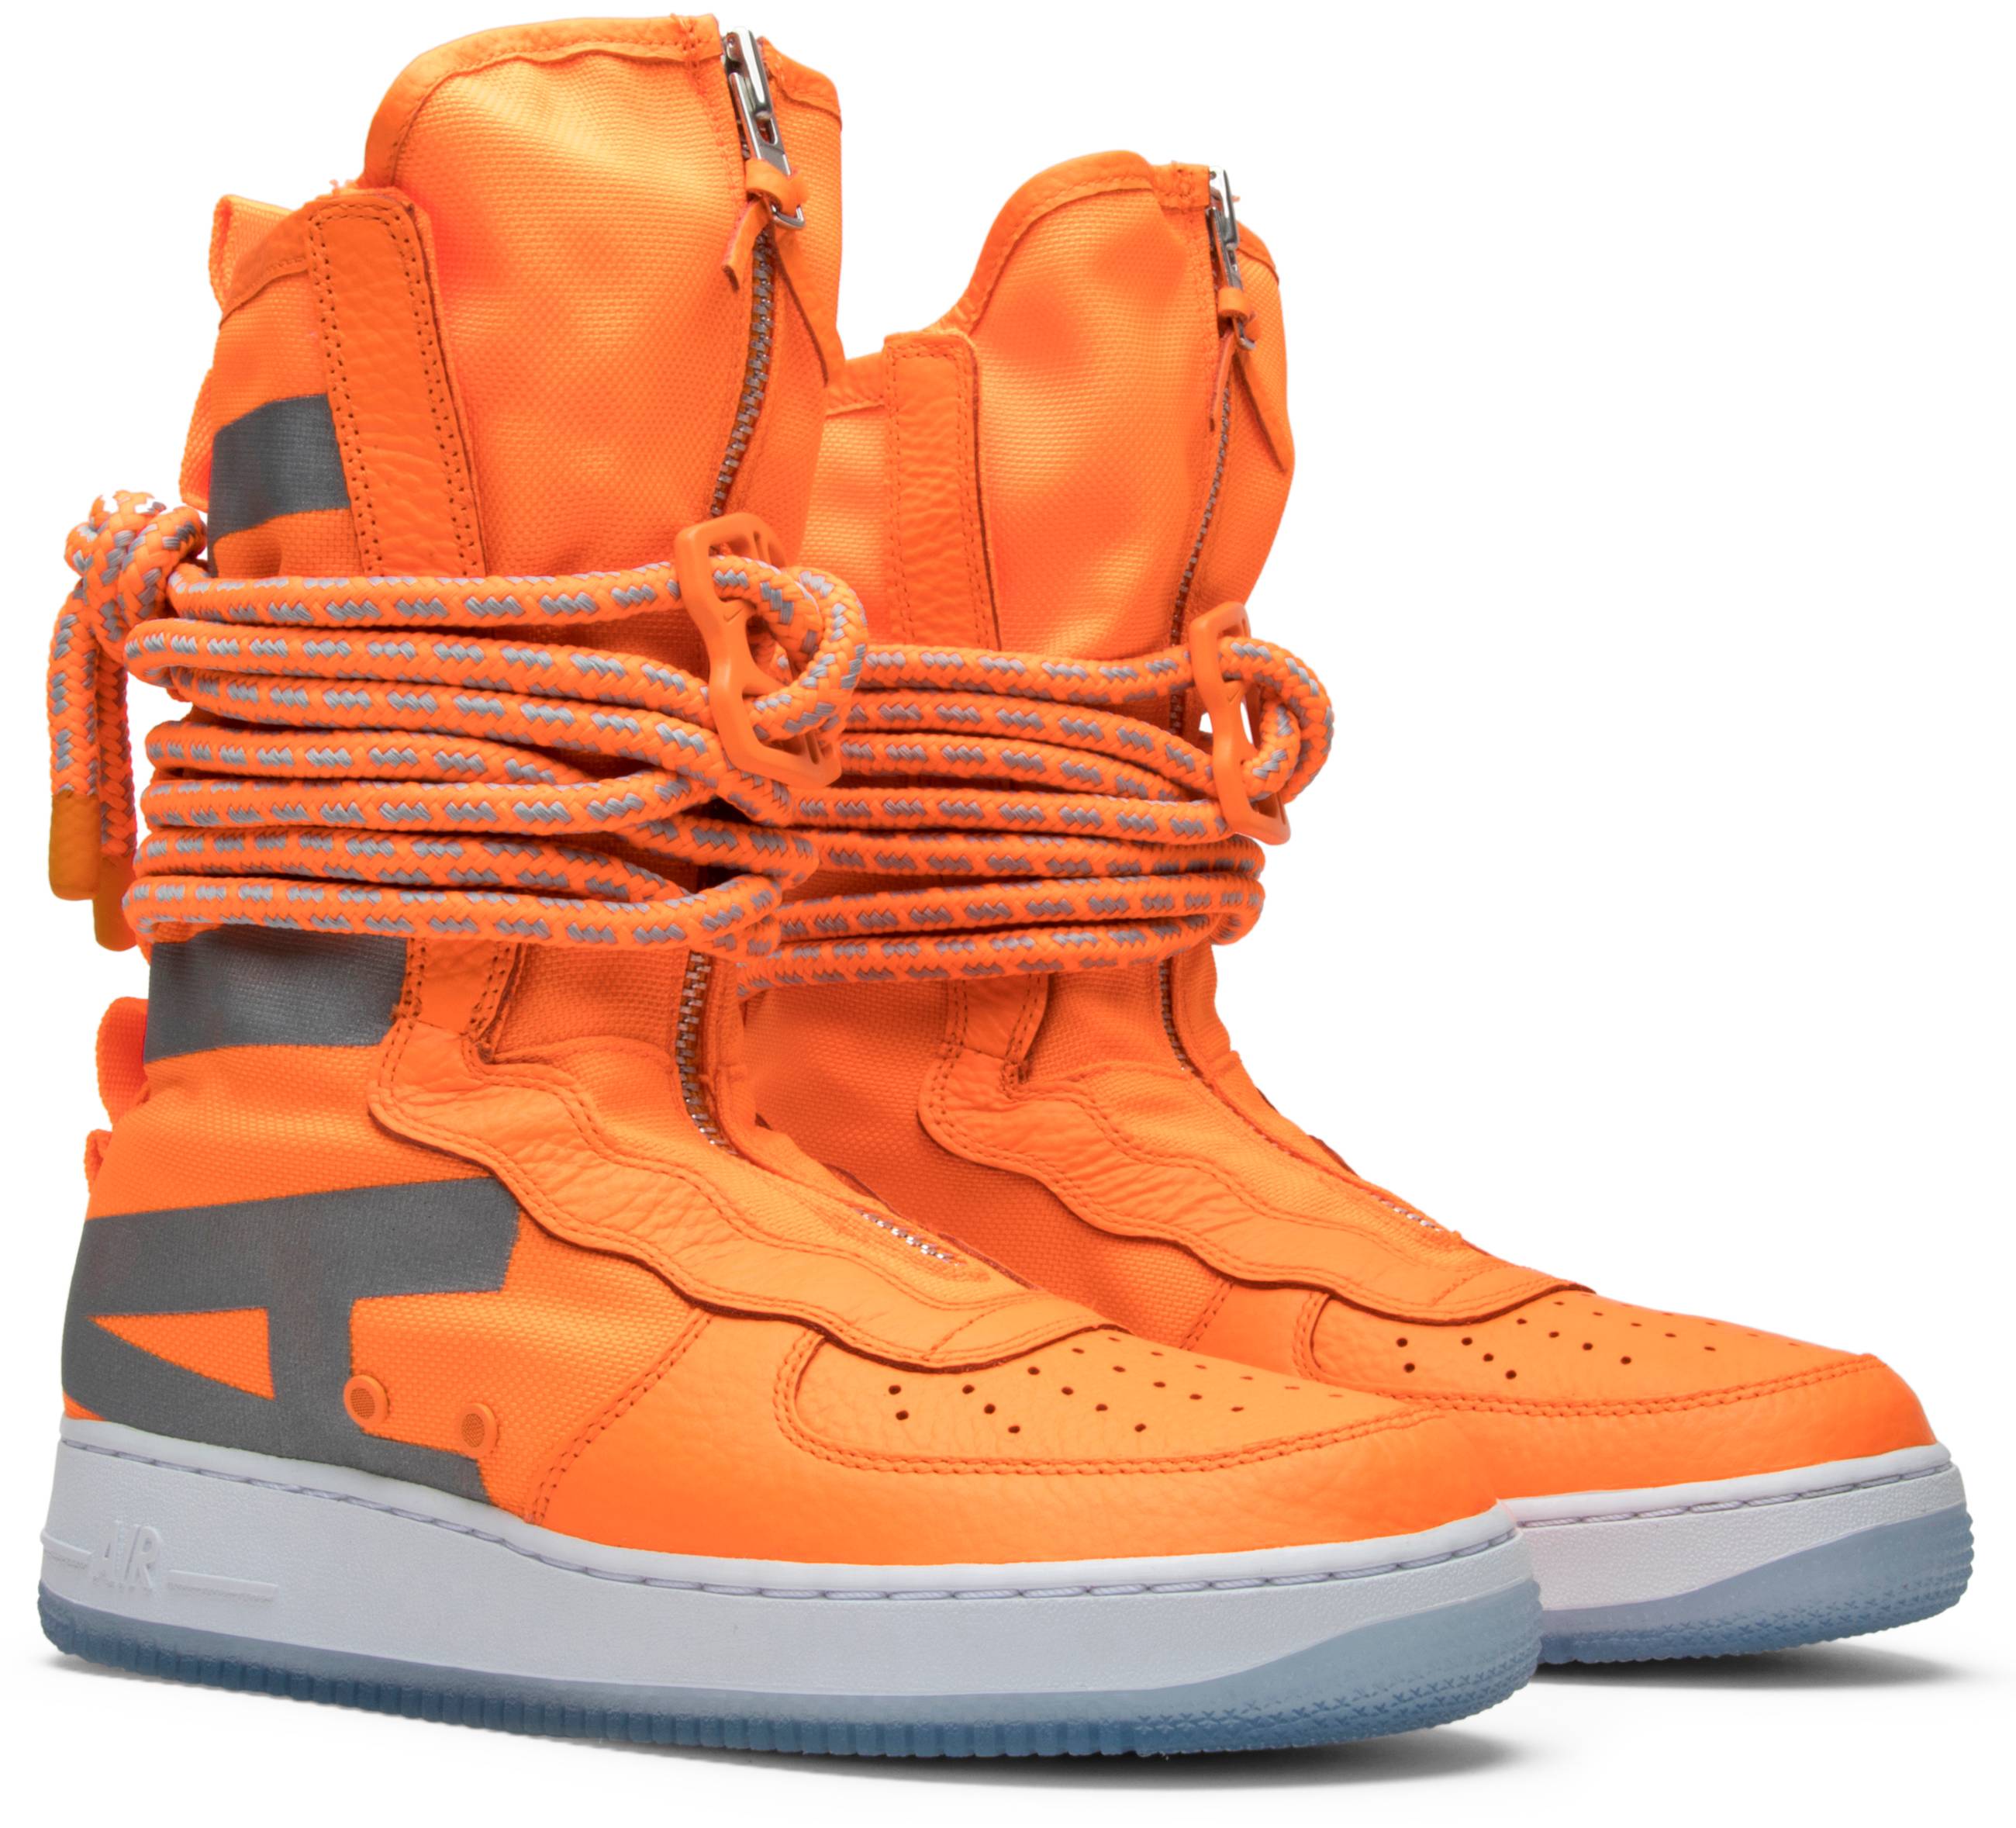 SF Air Force 1 High 'Total Orange' - Nike - AA1128 800 | GOAT